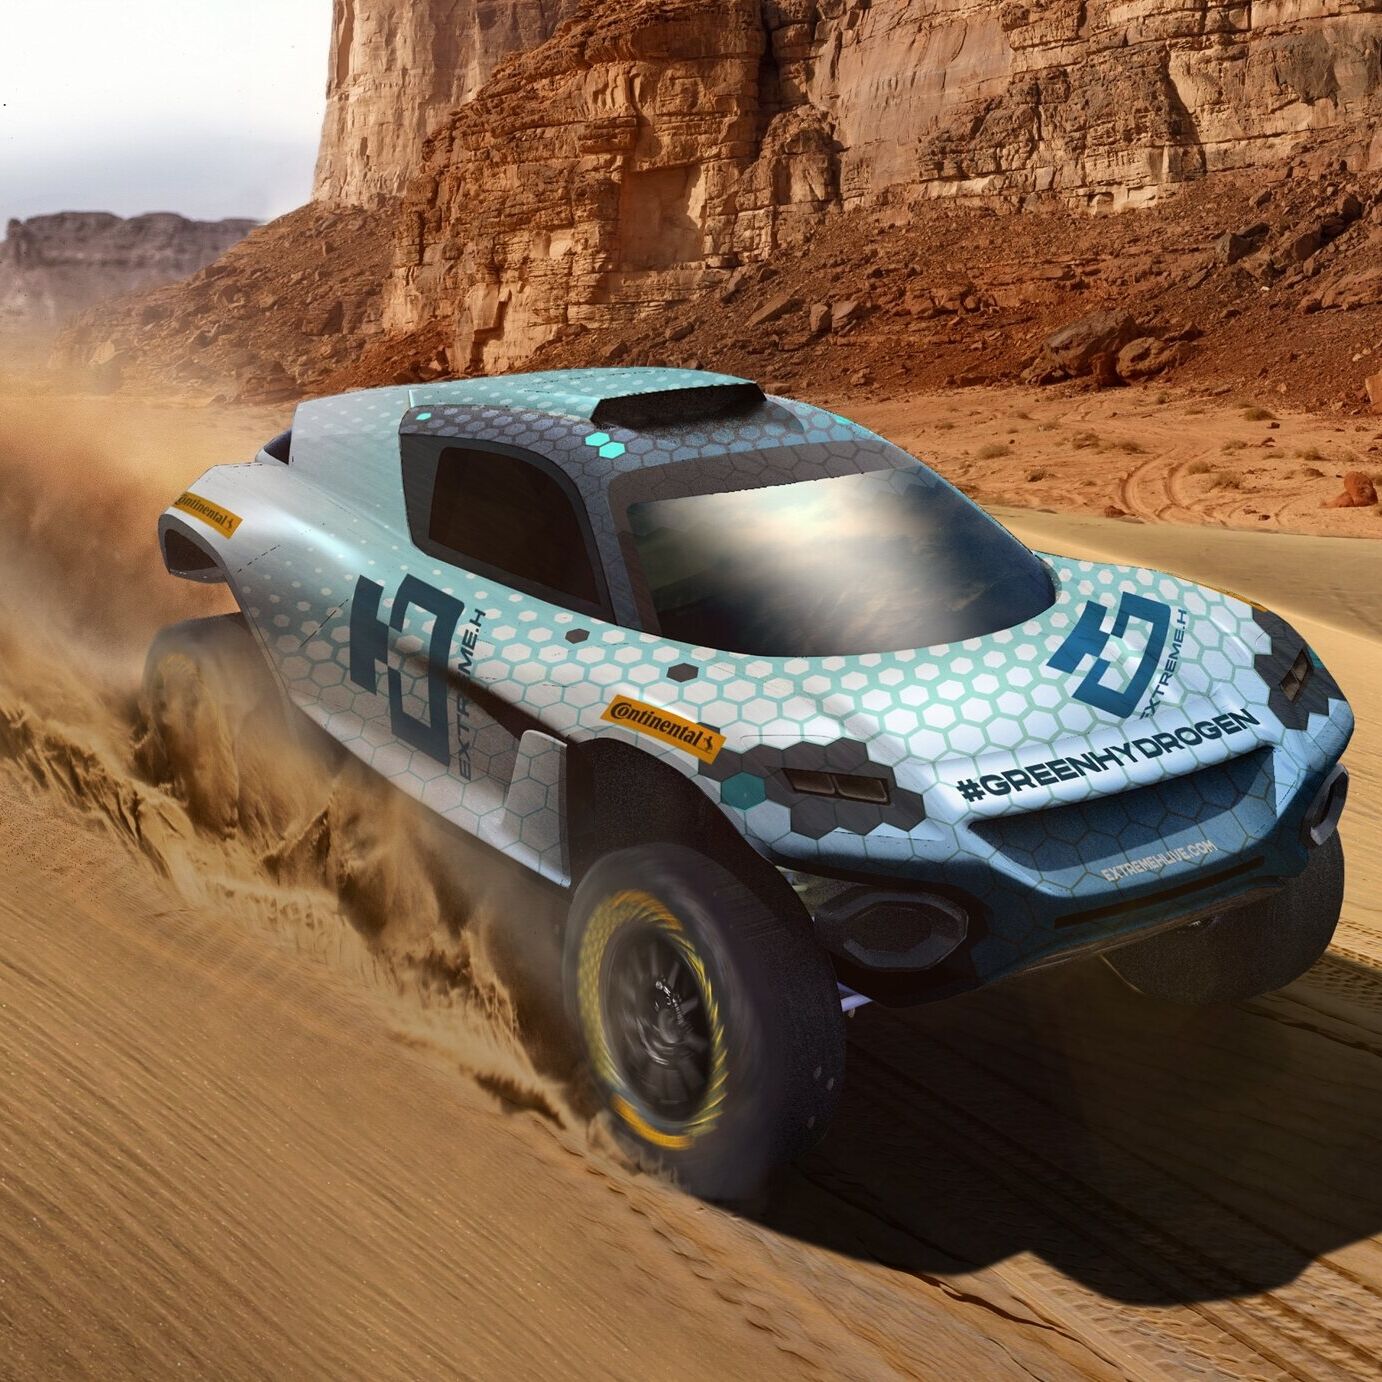 Extreme H: Extreme H станет первым в истории автоспорта чемпионатом на полностью водородных автомобилях.